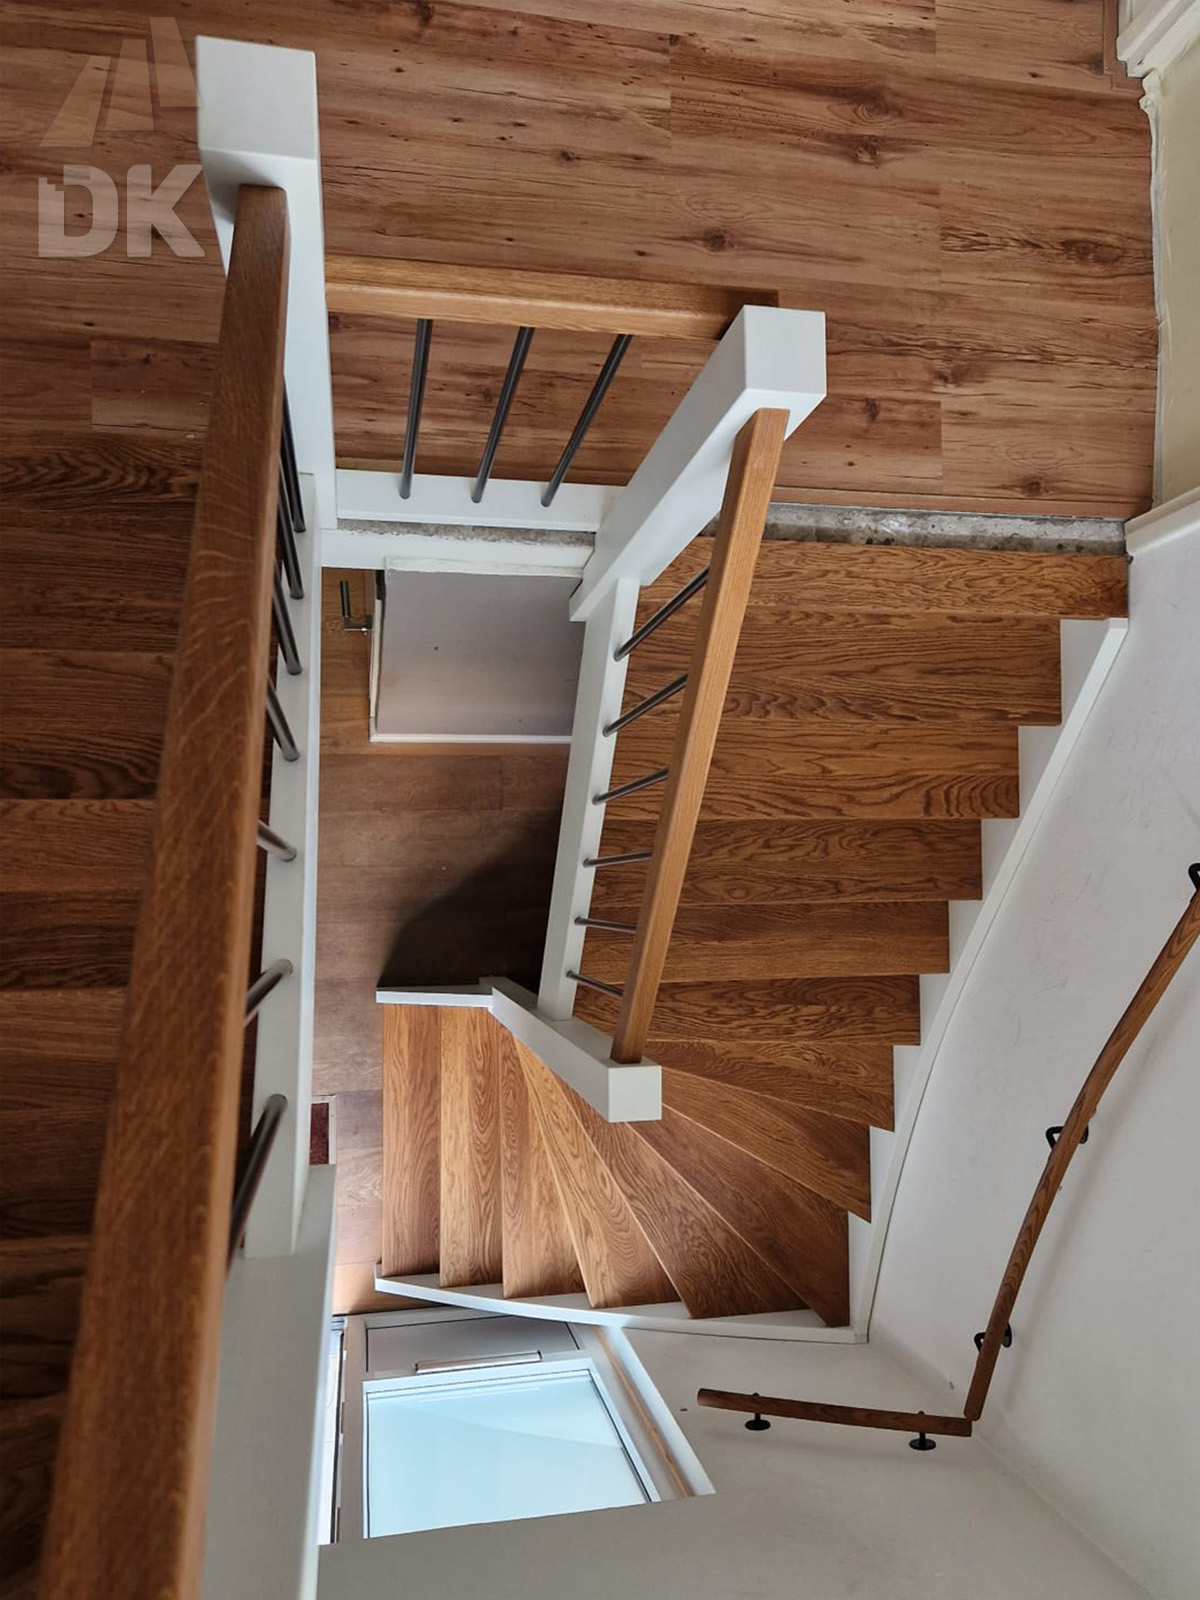 2 Stalen trappen vervangen door kwarttrappen - Foto 4